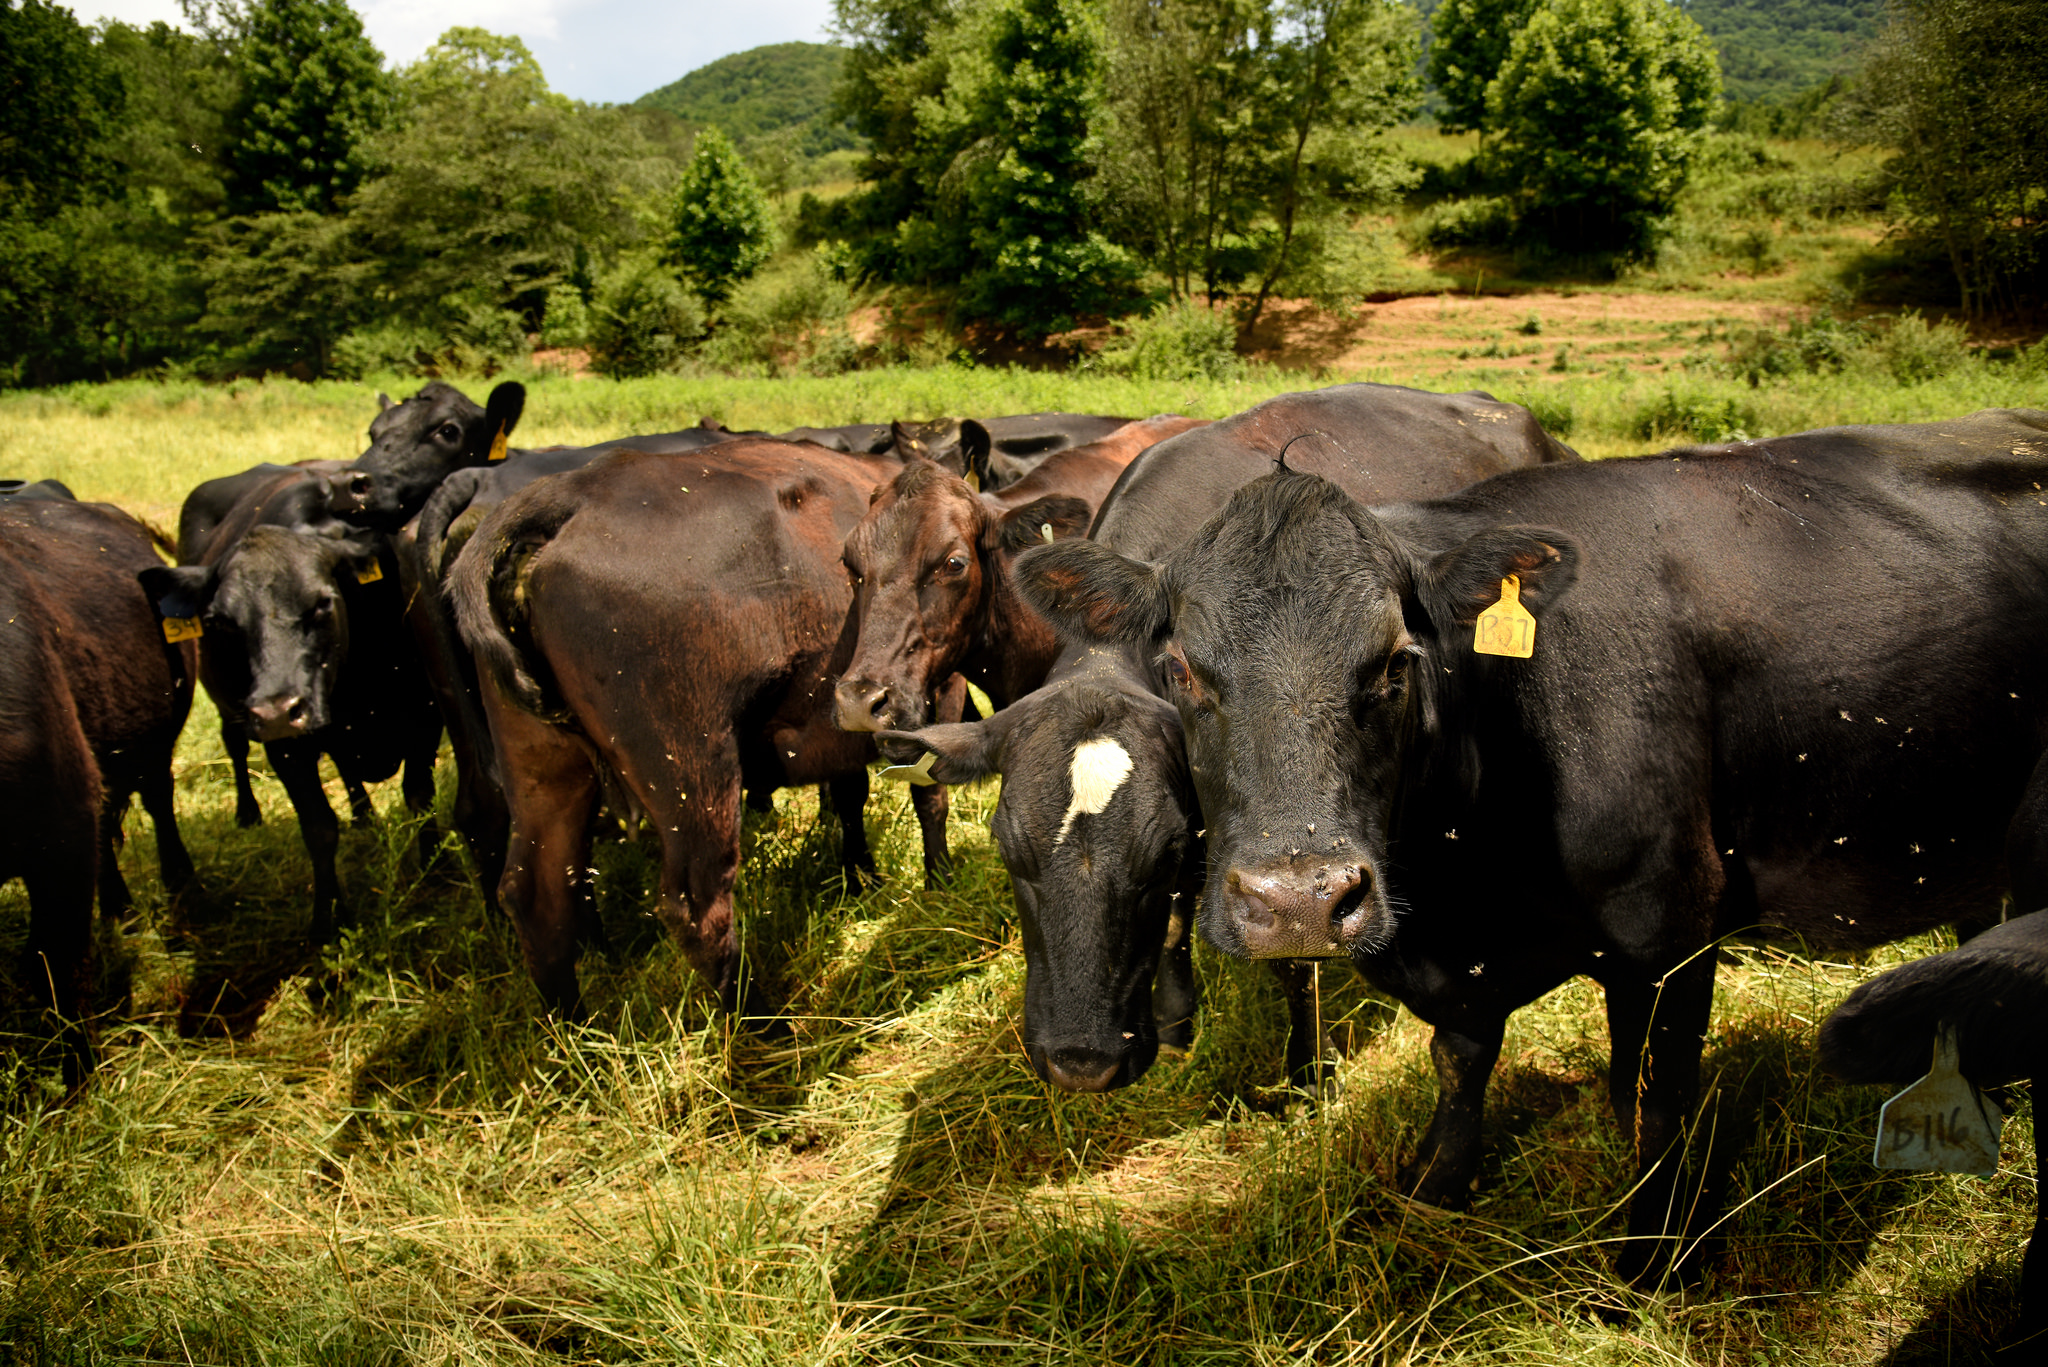 Cattle grazing in a field.